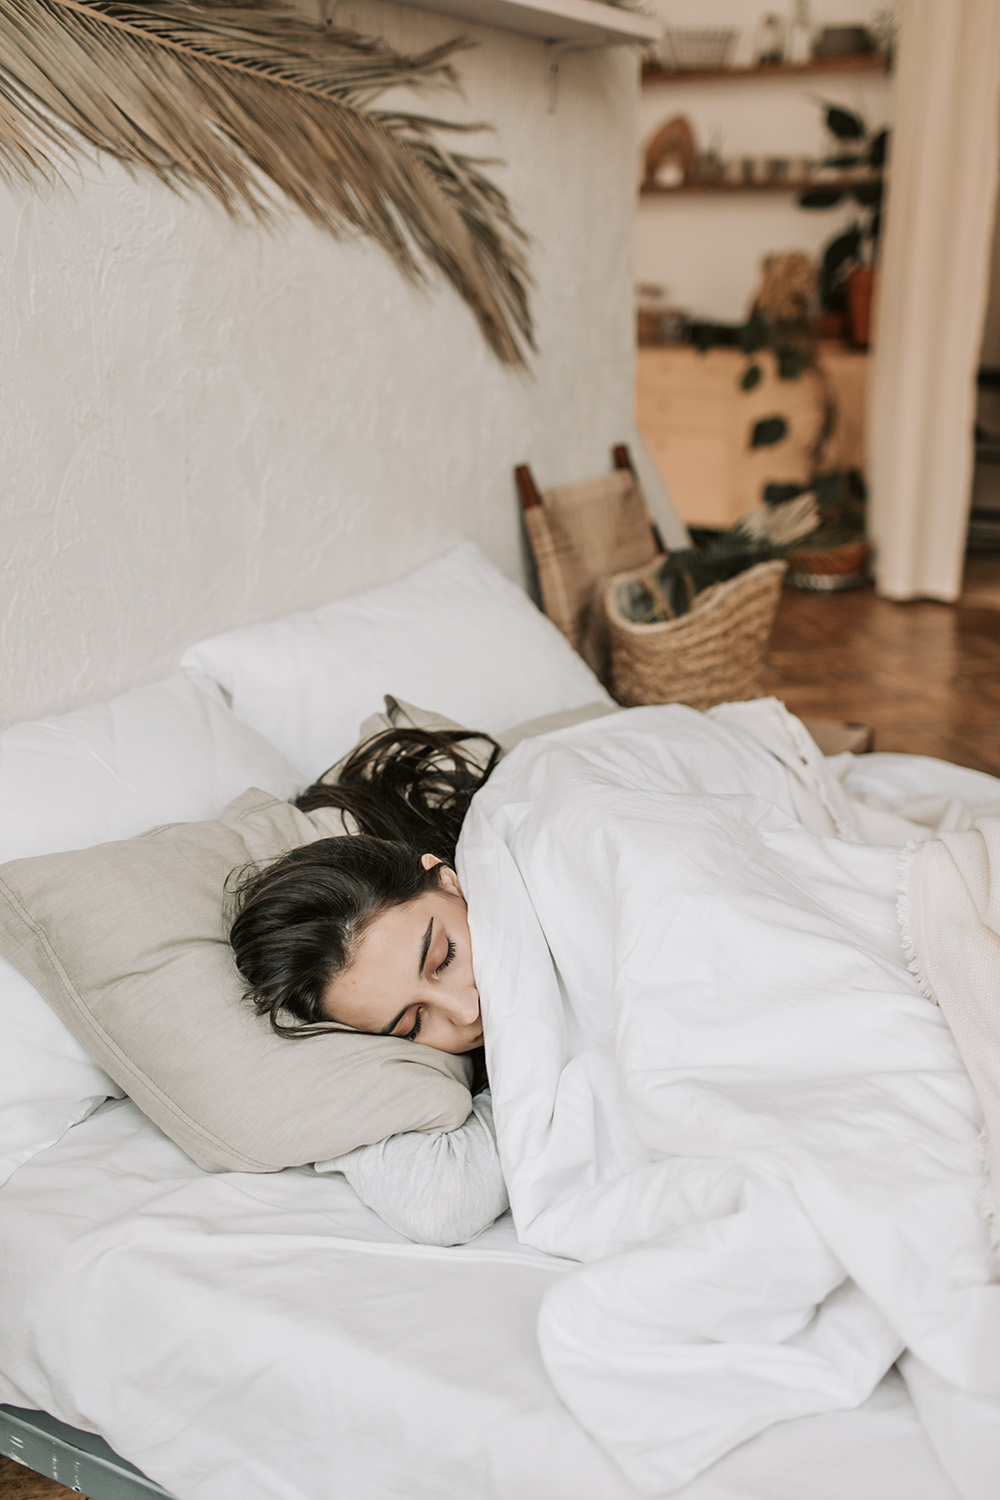 Thức khuya dẫn đến nhiều ảnh hưởng xấu cho sức khỏe